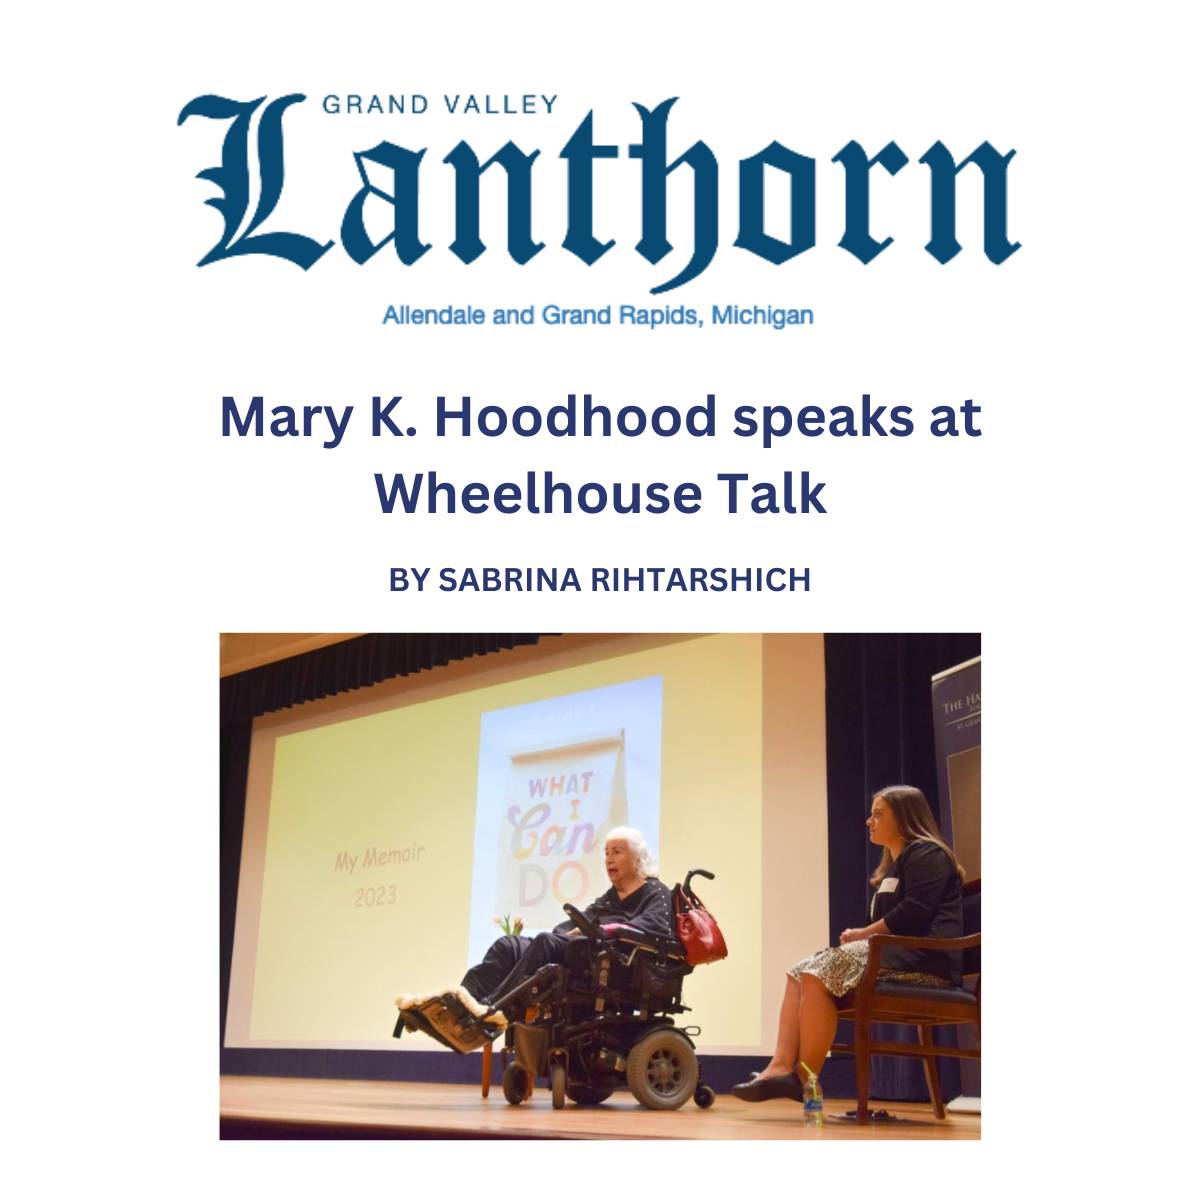 Mary K. Hoodhood speaks at Wheelhouse Talk - Lanthron